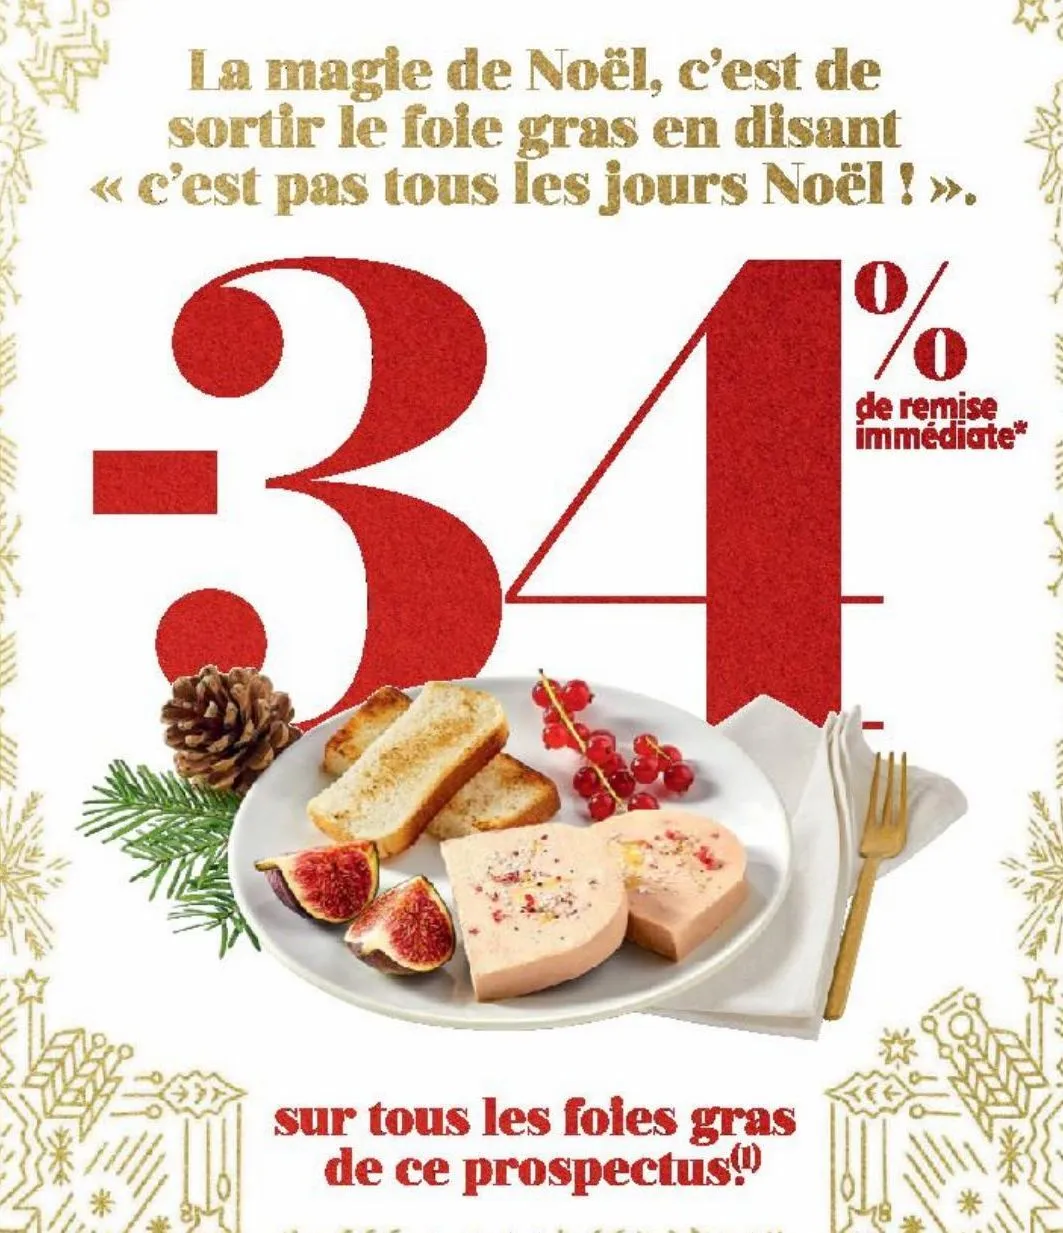 -34 % de remise immediate sur tous les foie gras de ce prospectus